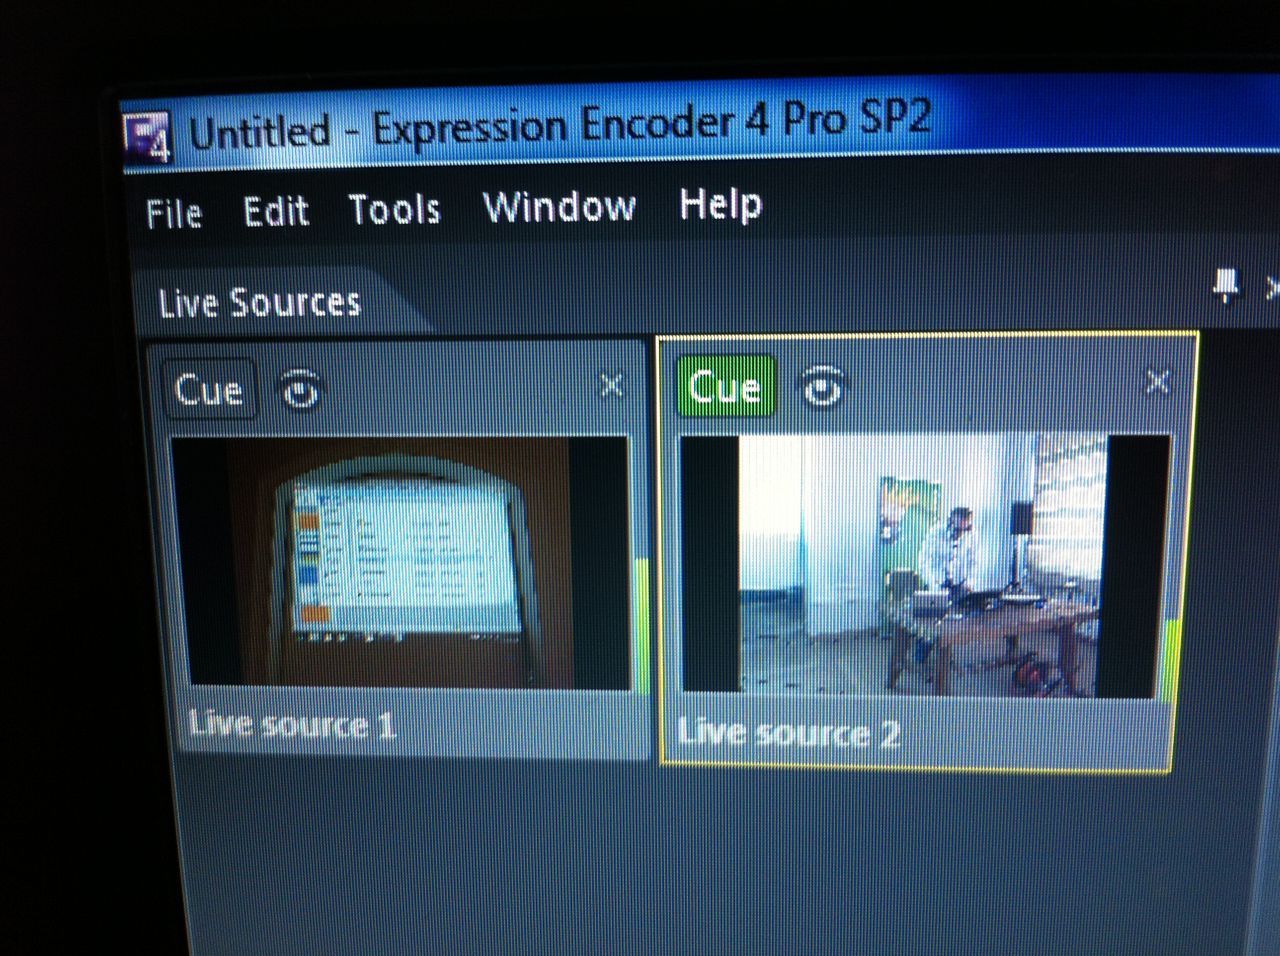 Expression Encoder Pro umożliwiał łatwe przełączanie kamer na żywo w trakcie transmisji